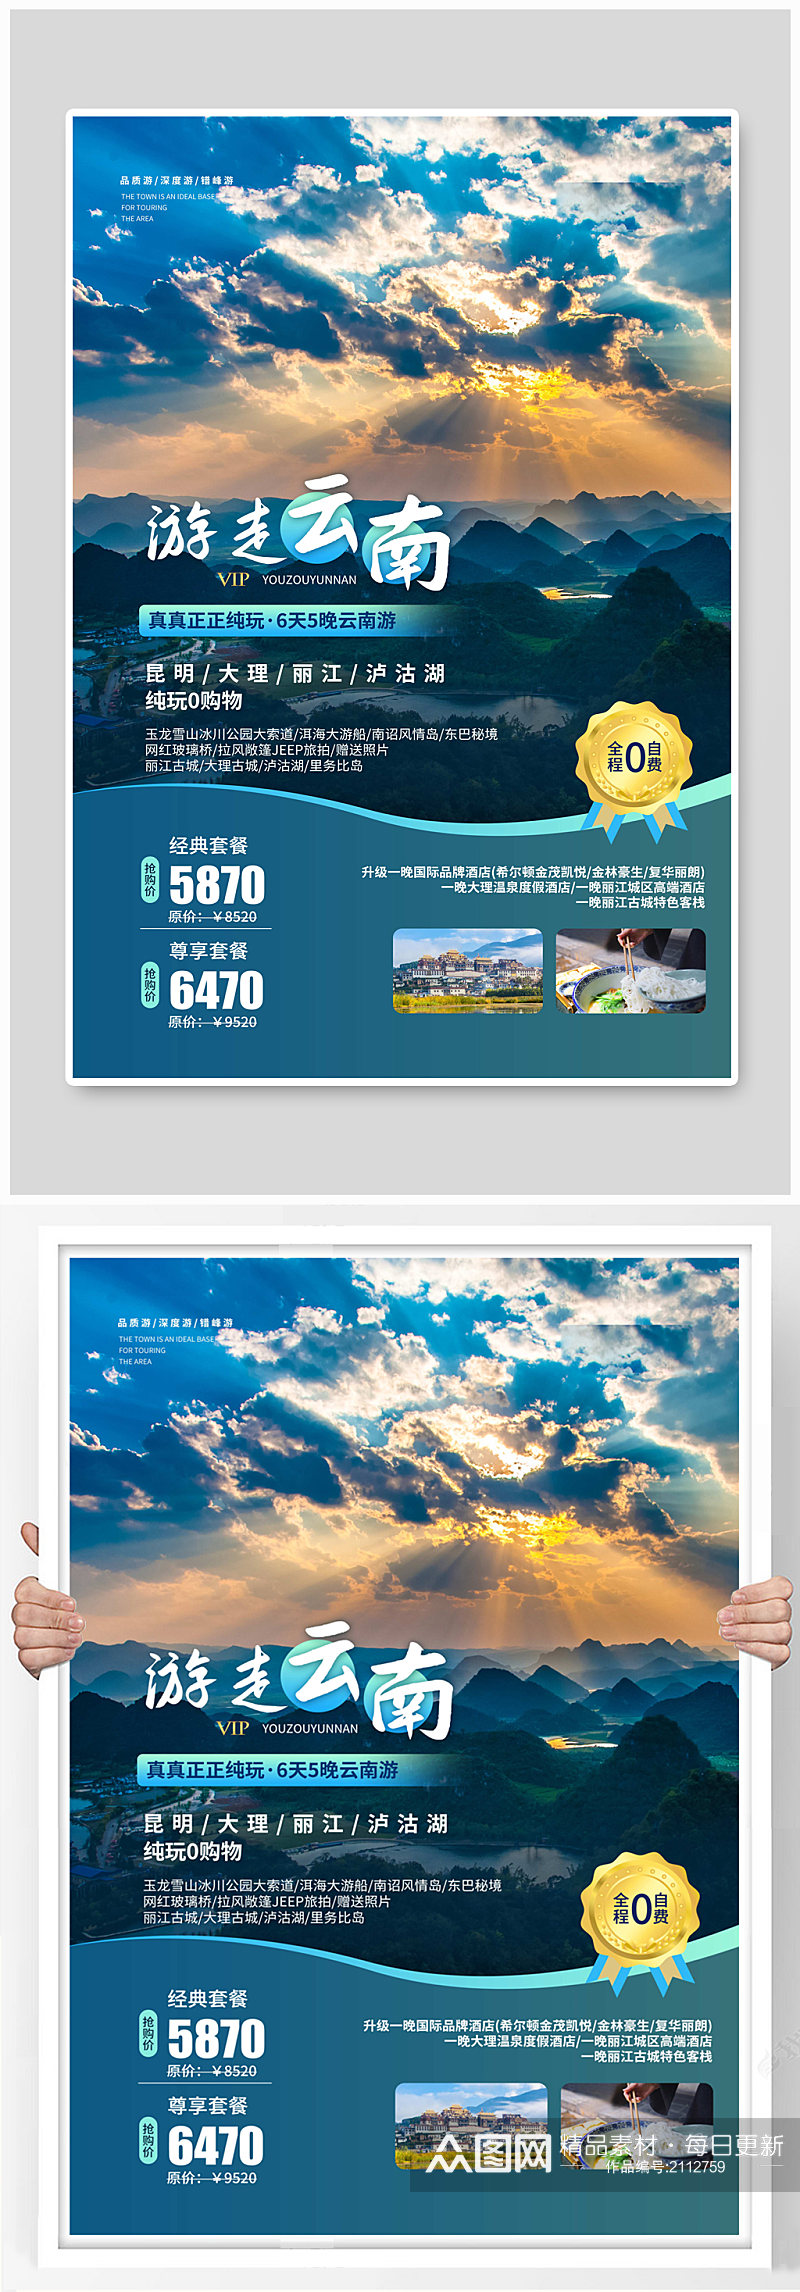 云南旅行旅游宣传海报素材